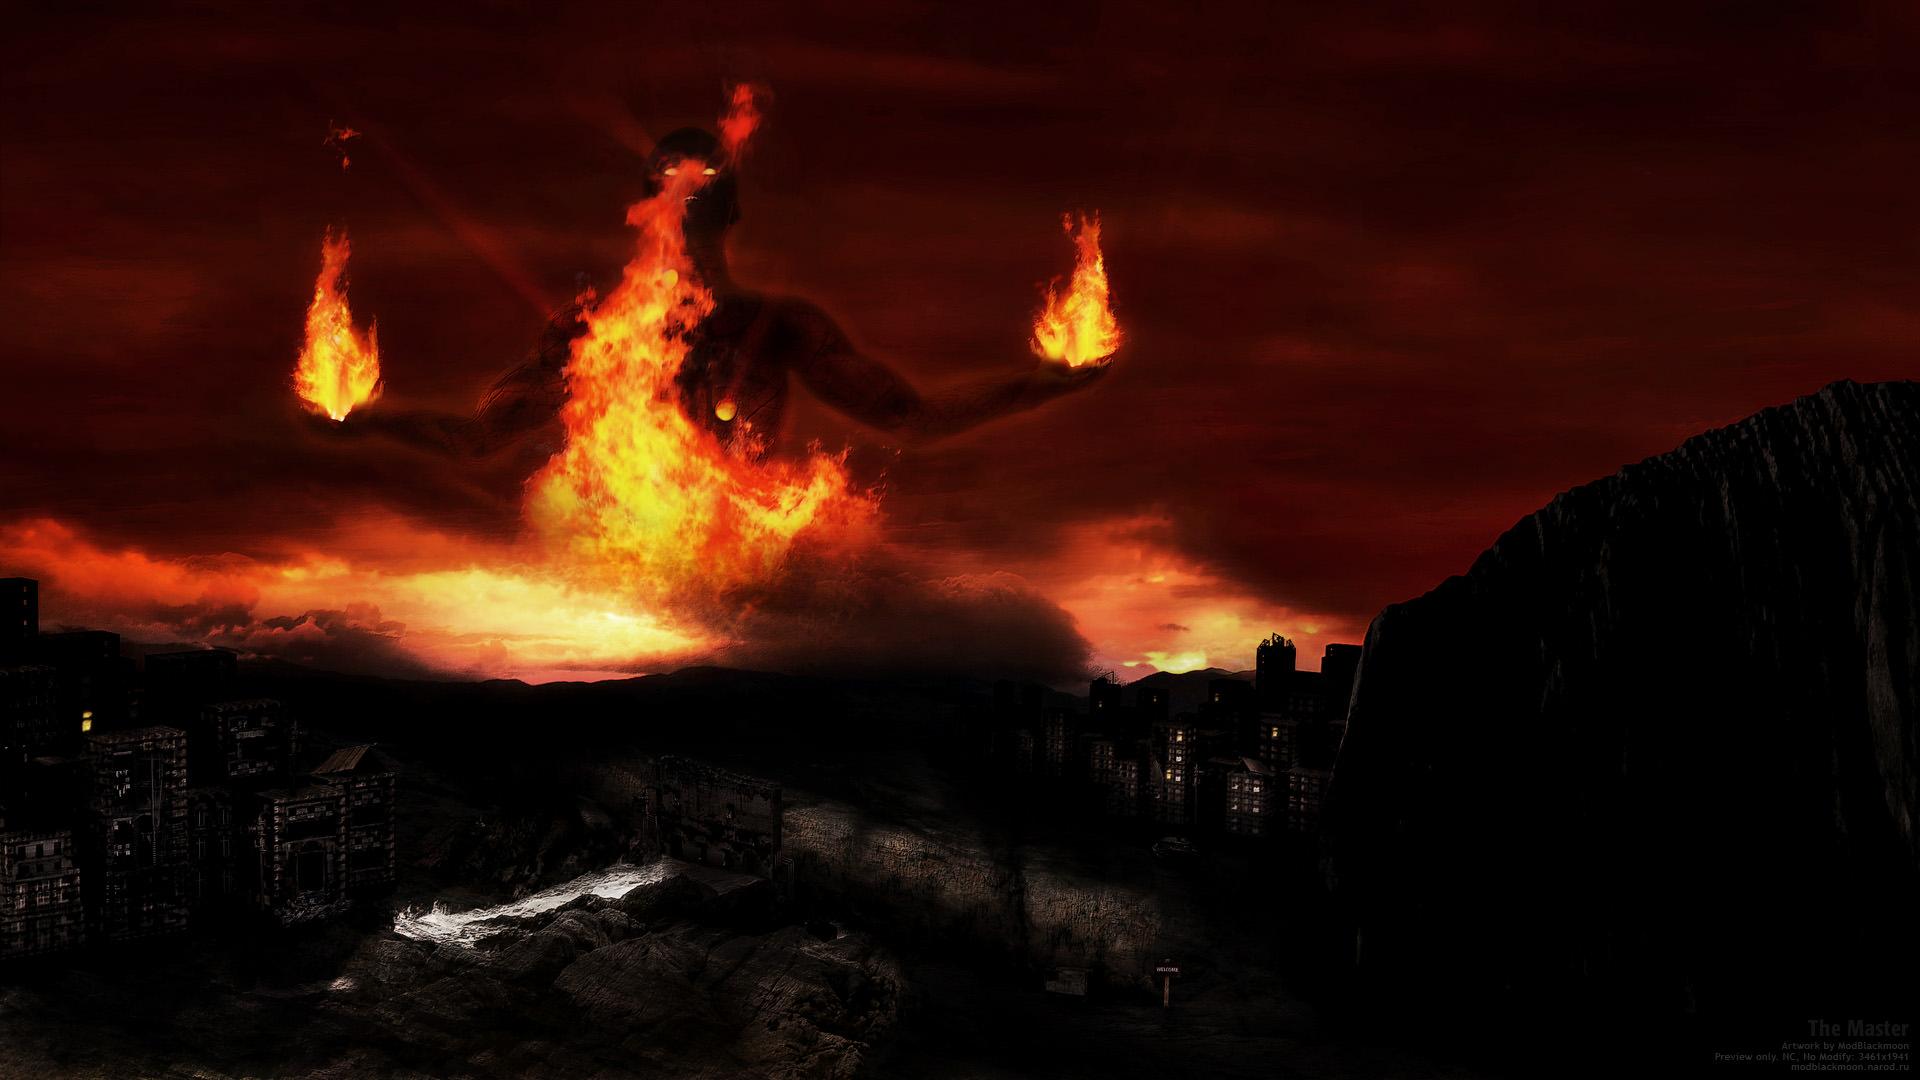 Dark Horror Occult Fantasy Demon Evil Fire Wallpaper Background